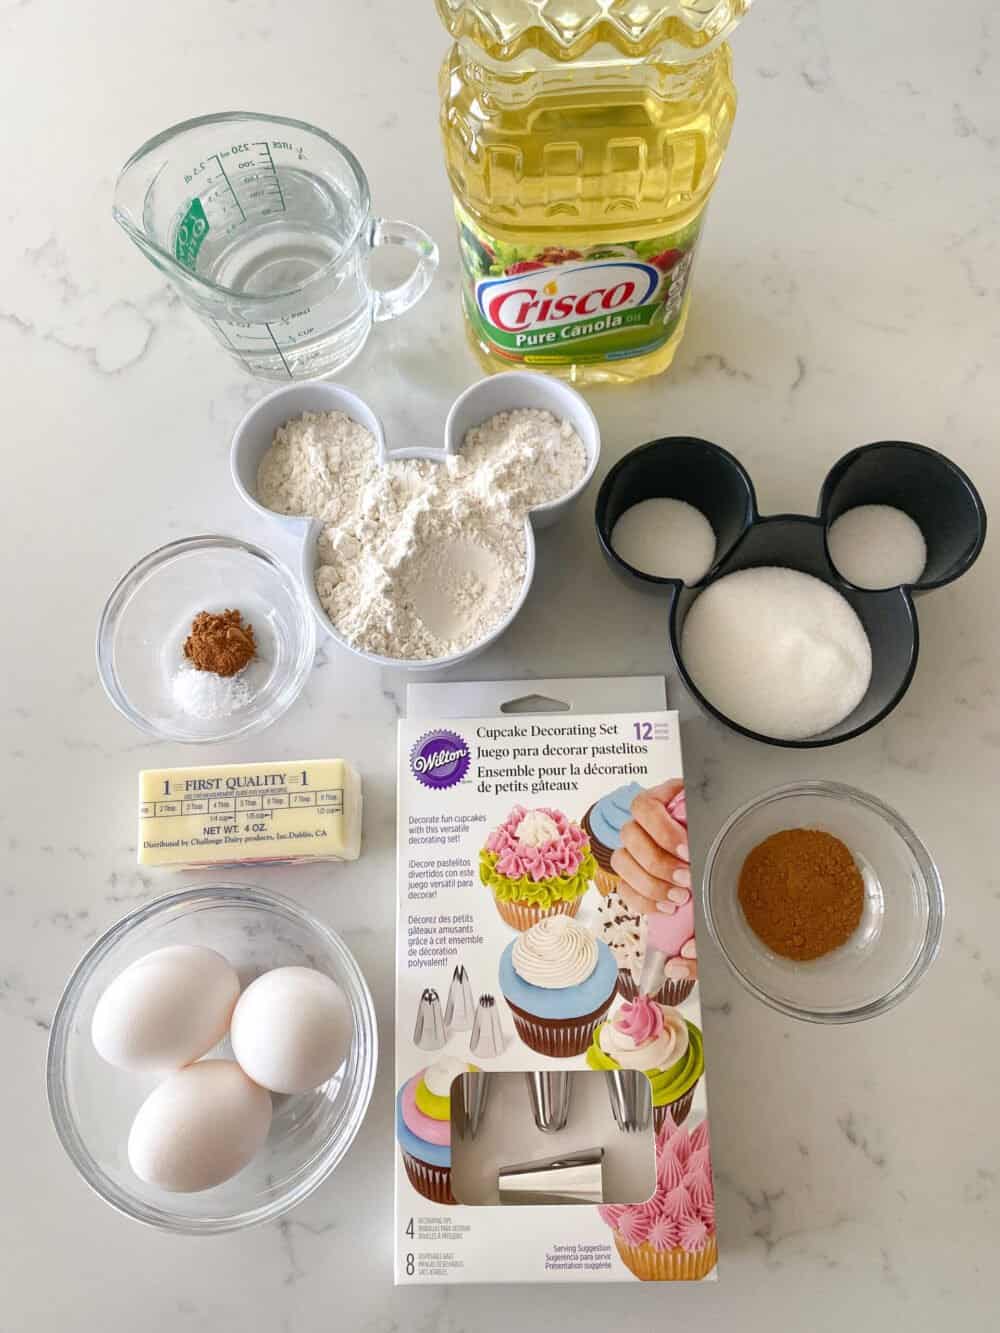 Churros Recipe From Disney Parks Churro Bites Picky Palate